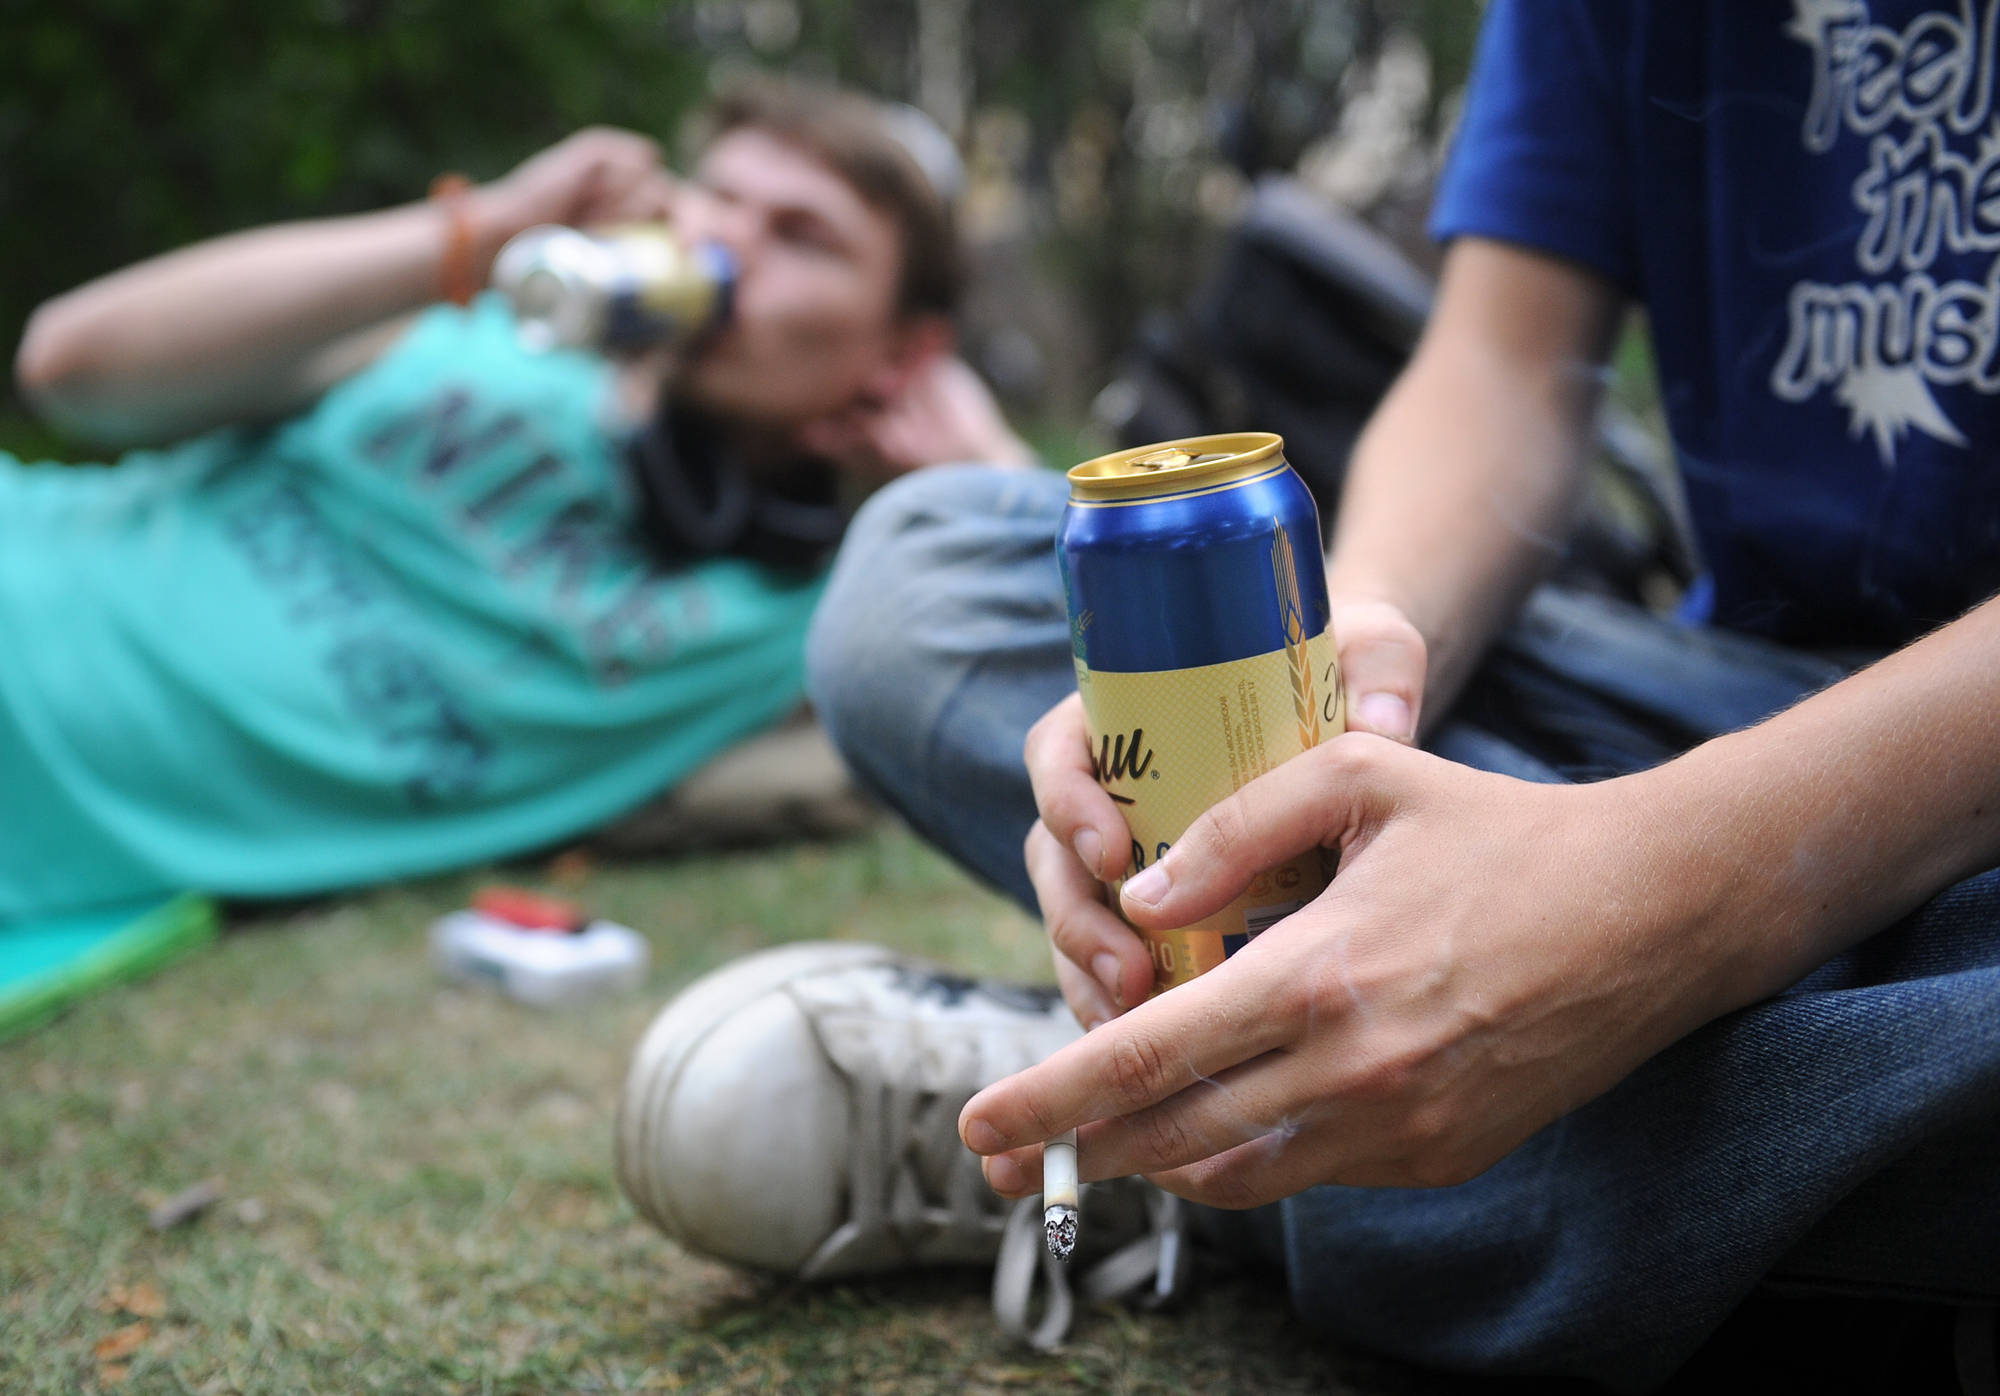 Распитие пива в общественном месте. Фото ИТАР-ТАСС / Валерий Шарифулин